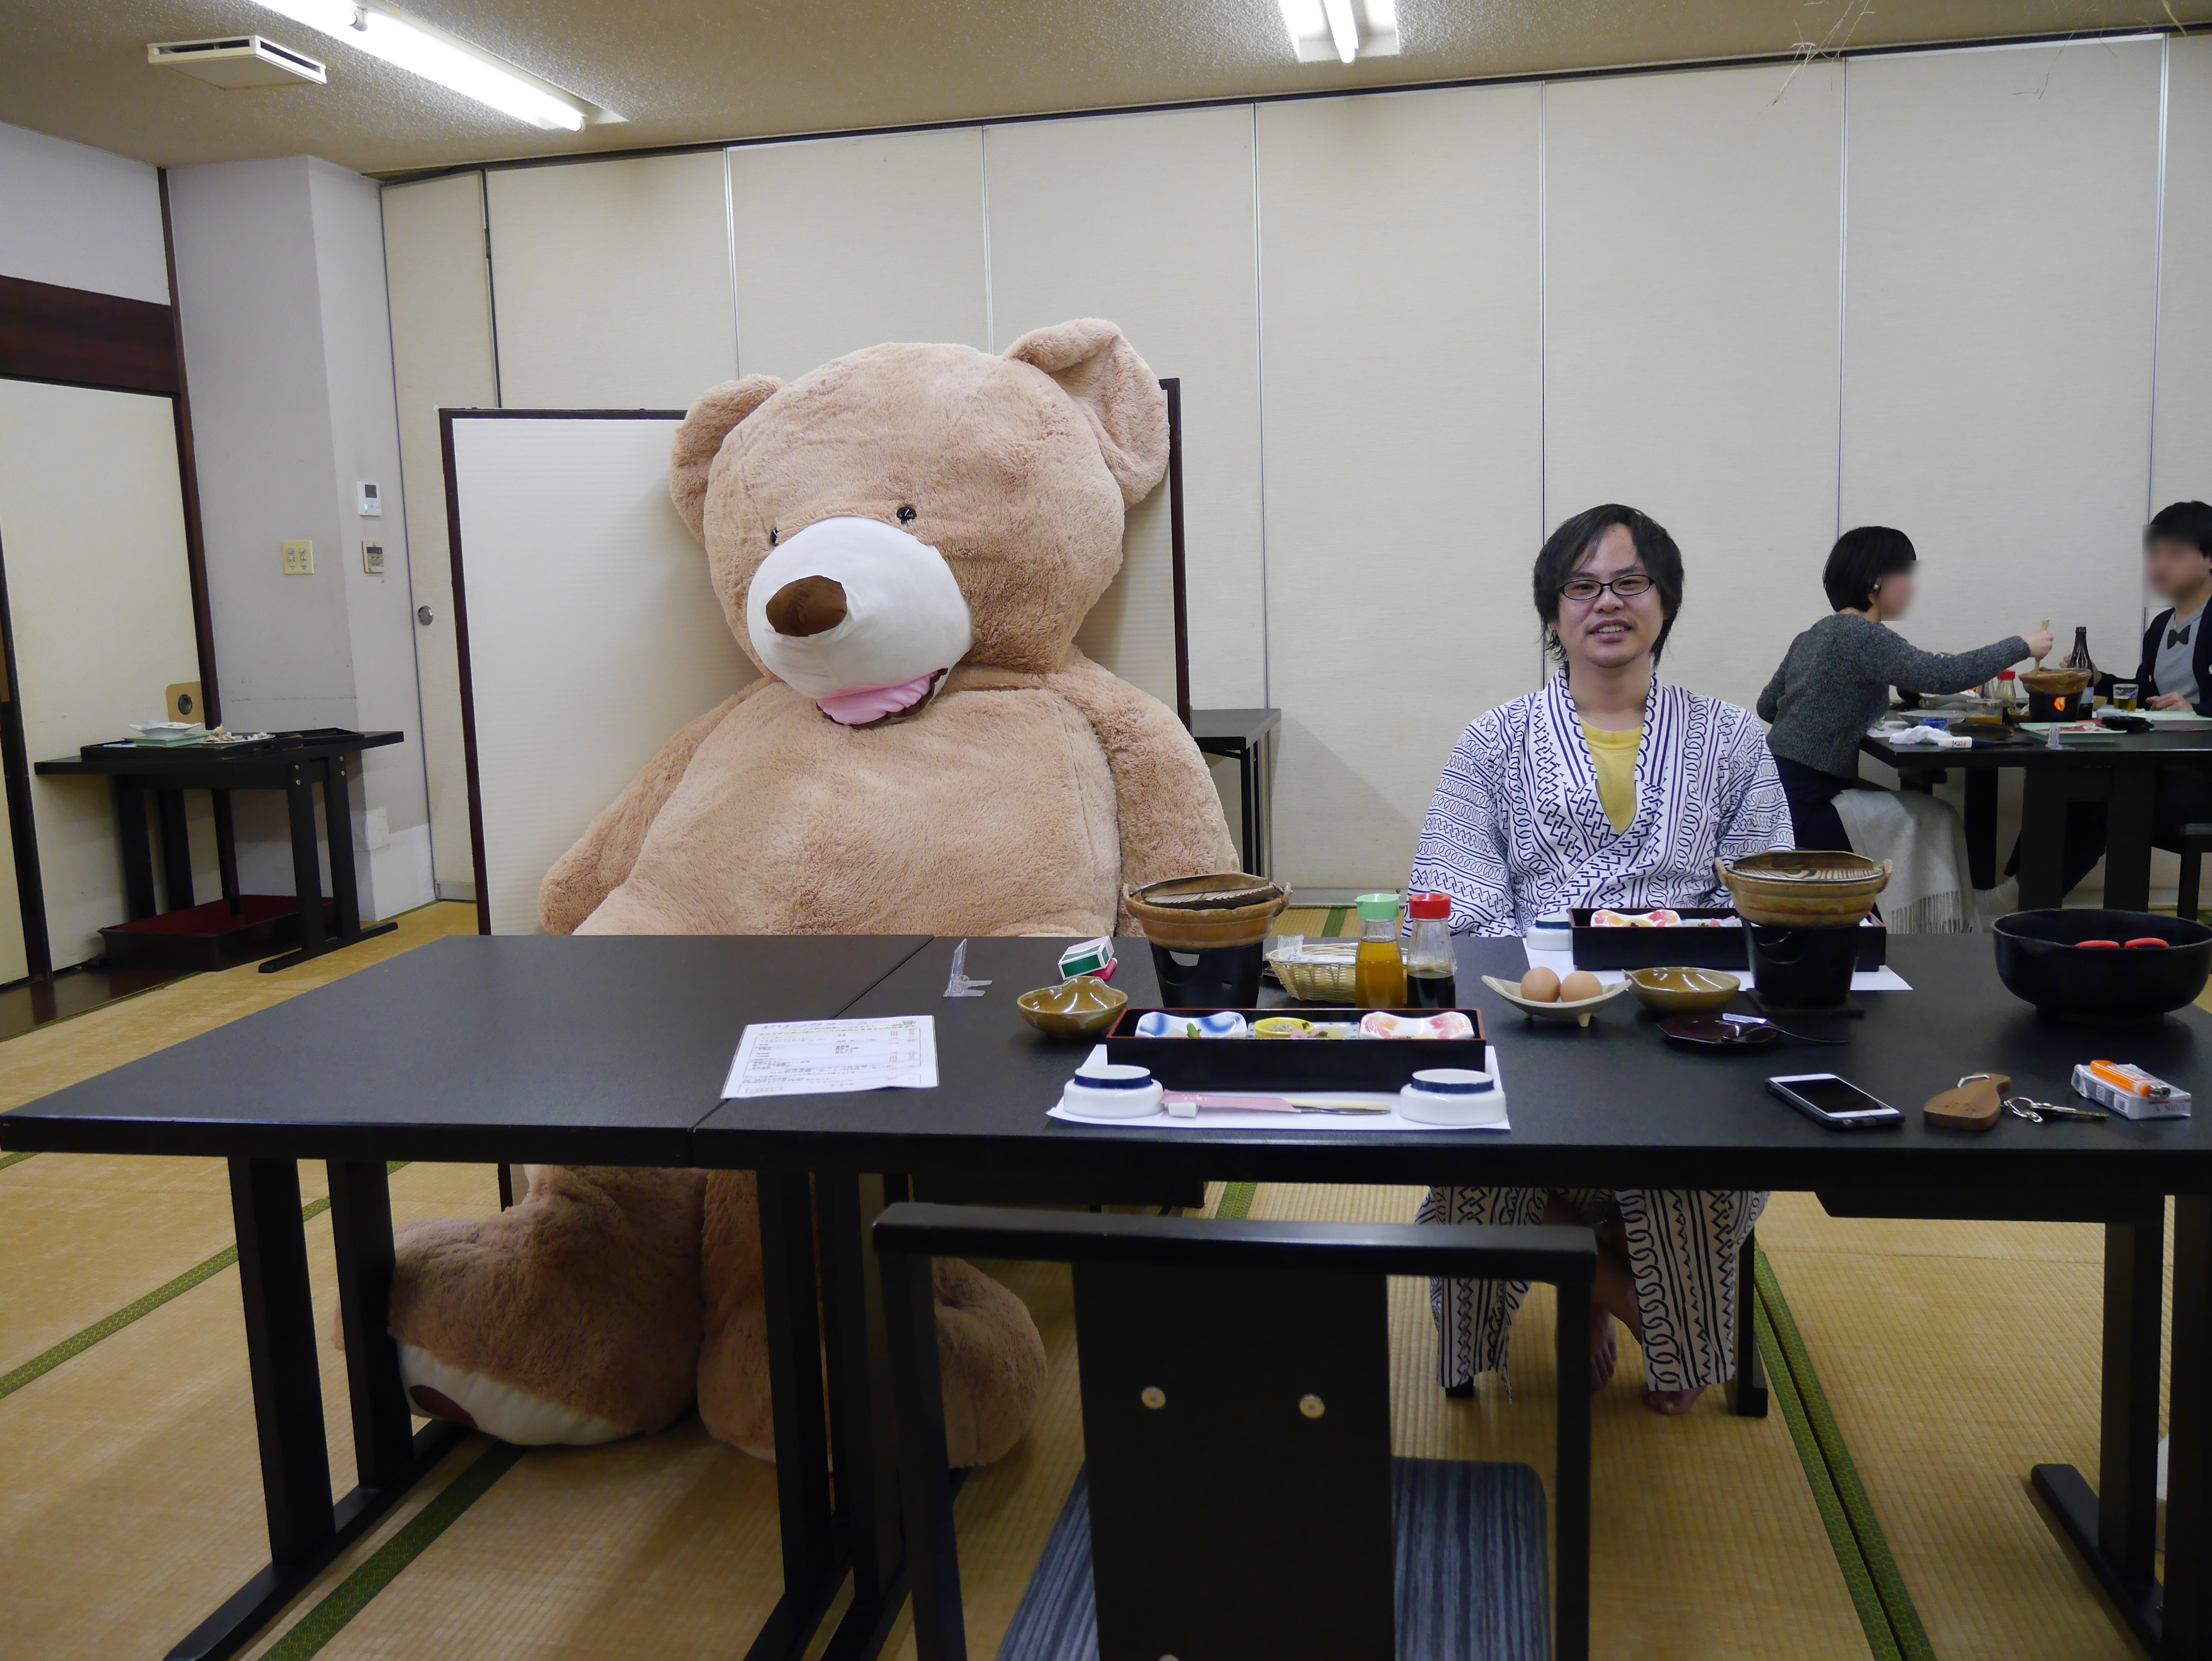 デカすぎて泣いた 2m50cmの巨大クマと佐賀県に1泊2日してきた しかも飛行機で ロケットニュース24